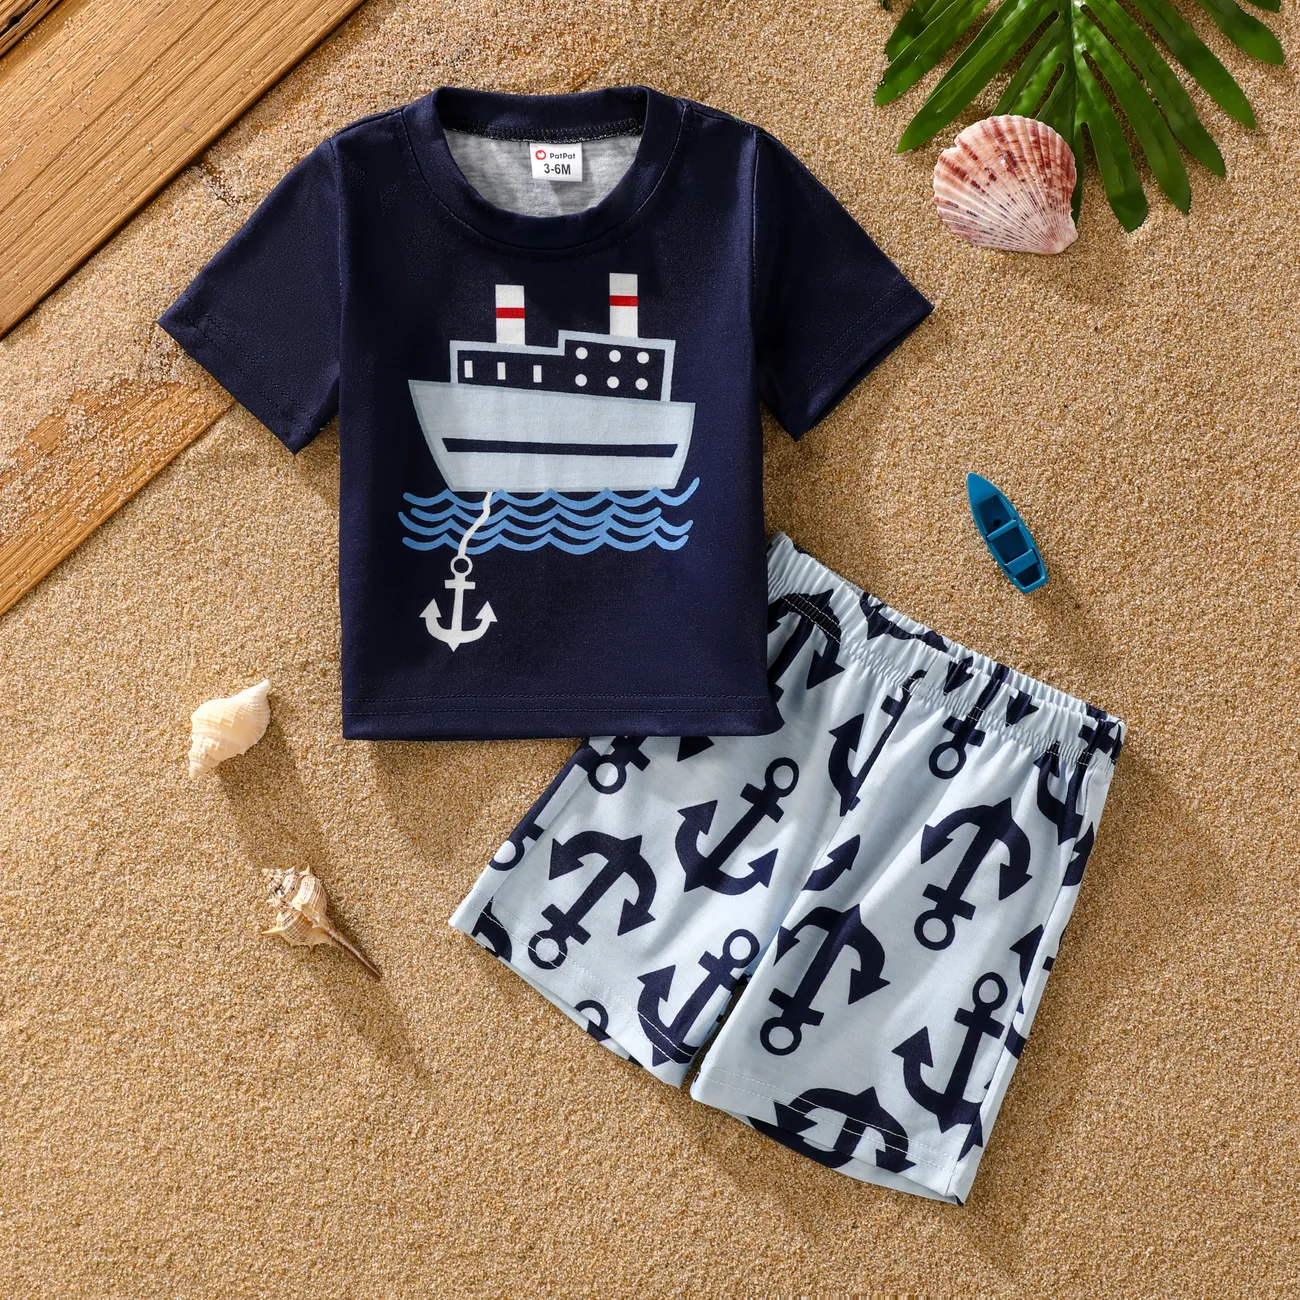  2pcs Boys Baby Childlike Marine Element Tee and Shorts Set  Dark Blue big image 1